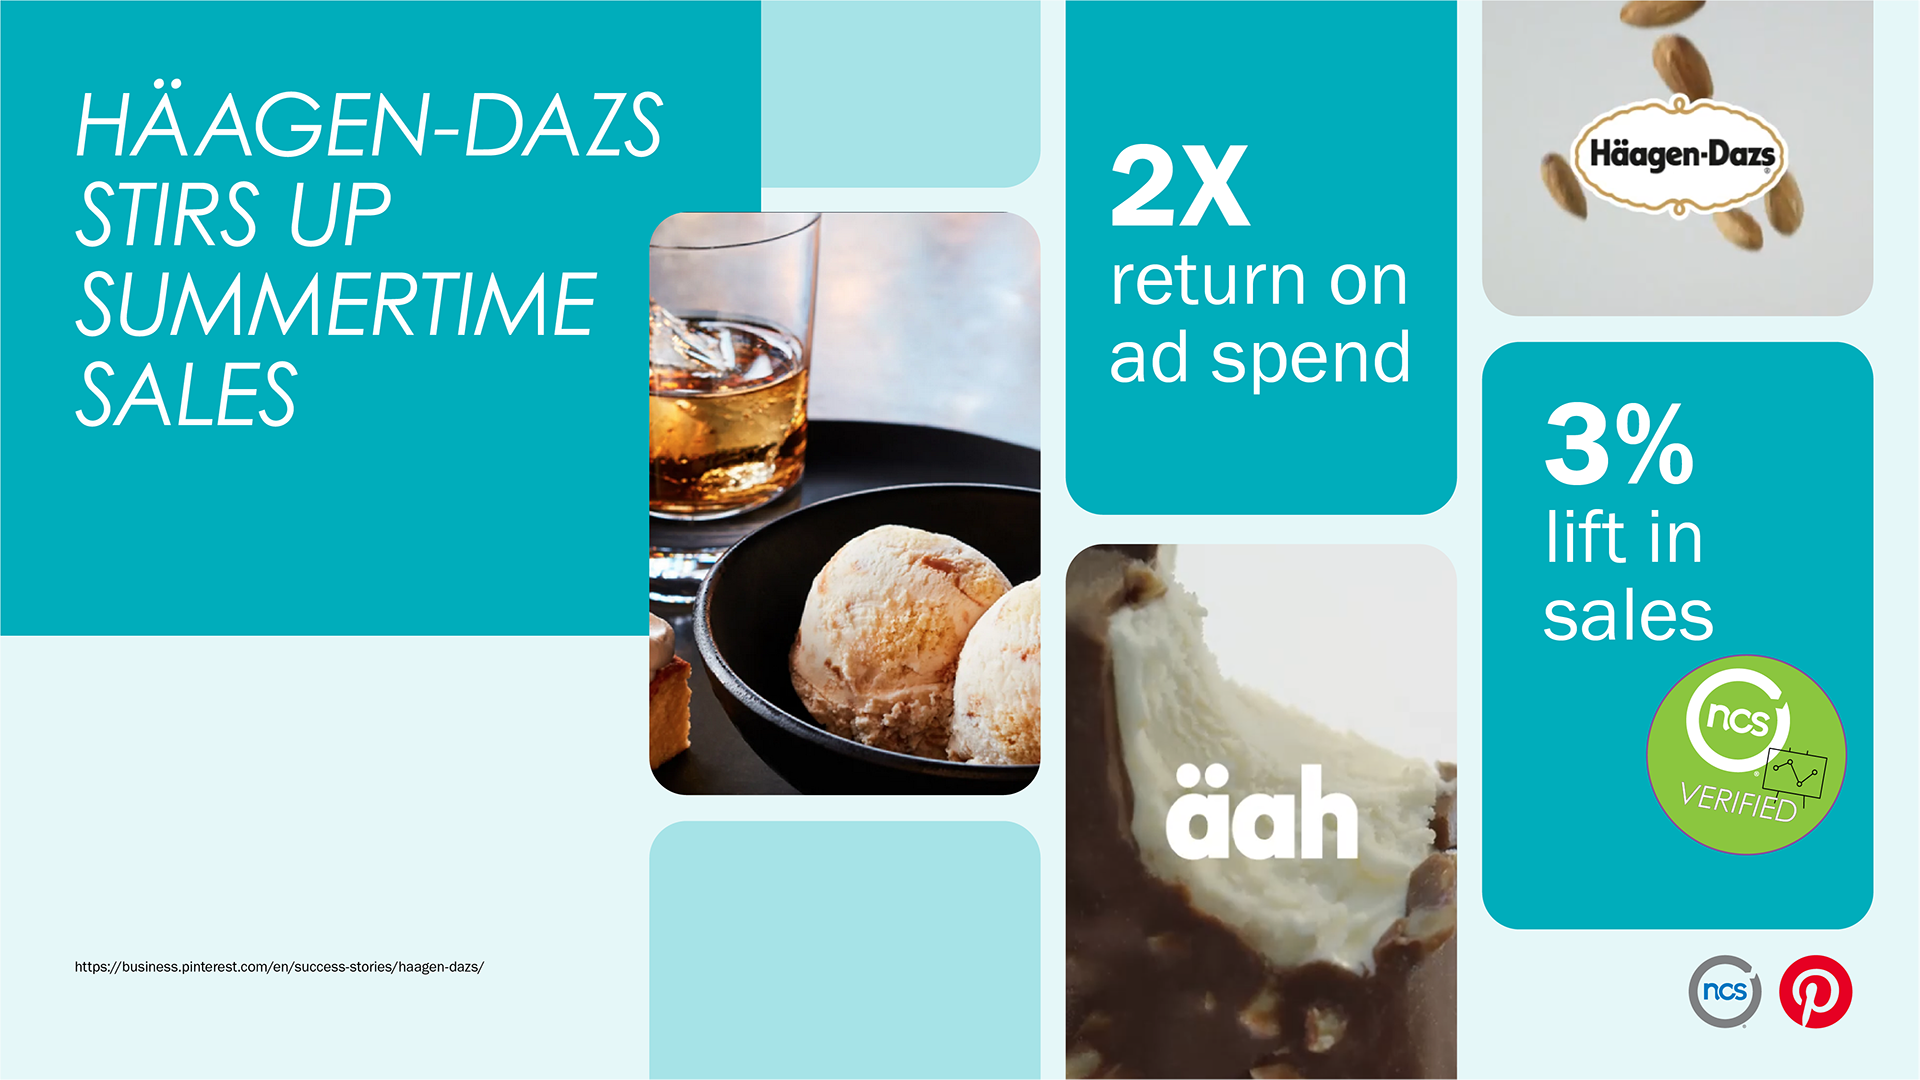 NCS Sales Effect results show Häagen-Dazs campaigns achieved 3% sales lift